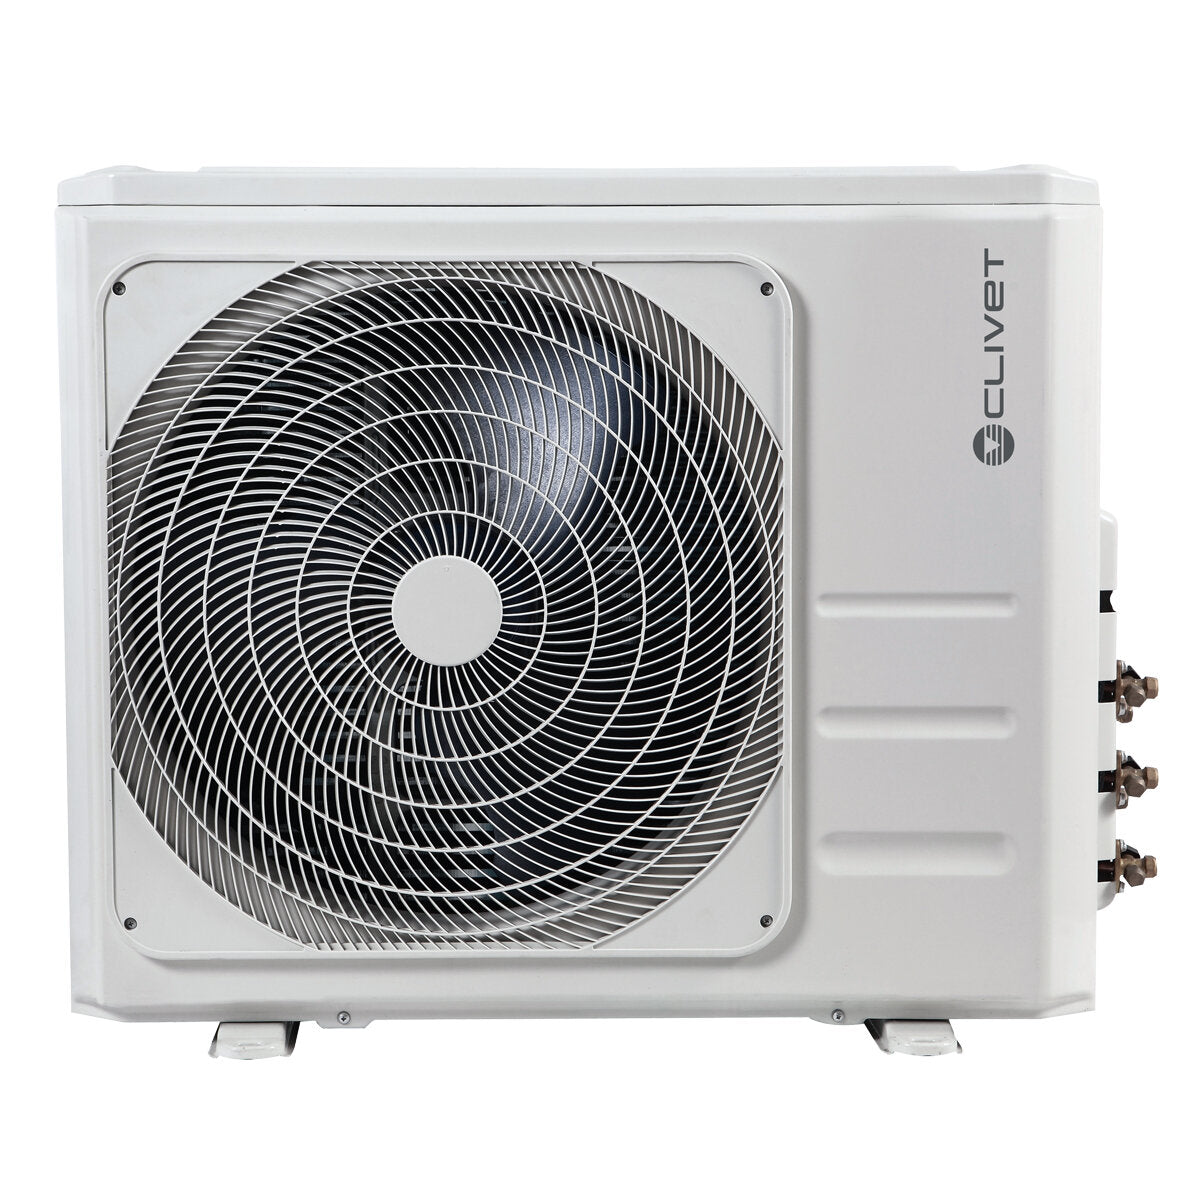 Air conditioner Clivet Essential 2 penta split 9000 + 9000 + 9000 + 9000 + 18000 BTU inverter A ++ outdoor unit 12.3 kW